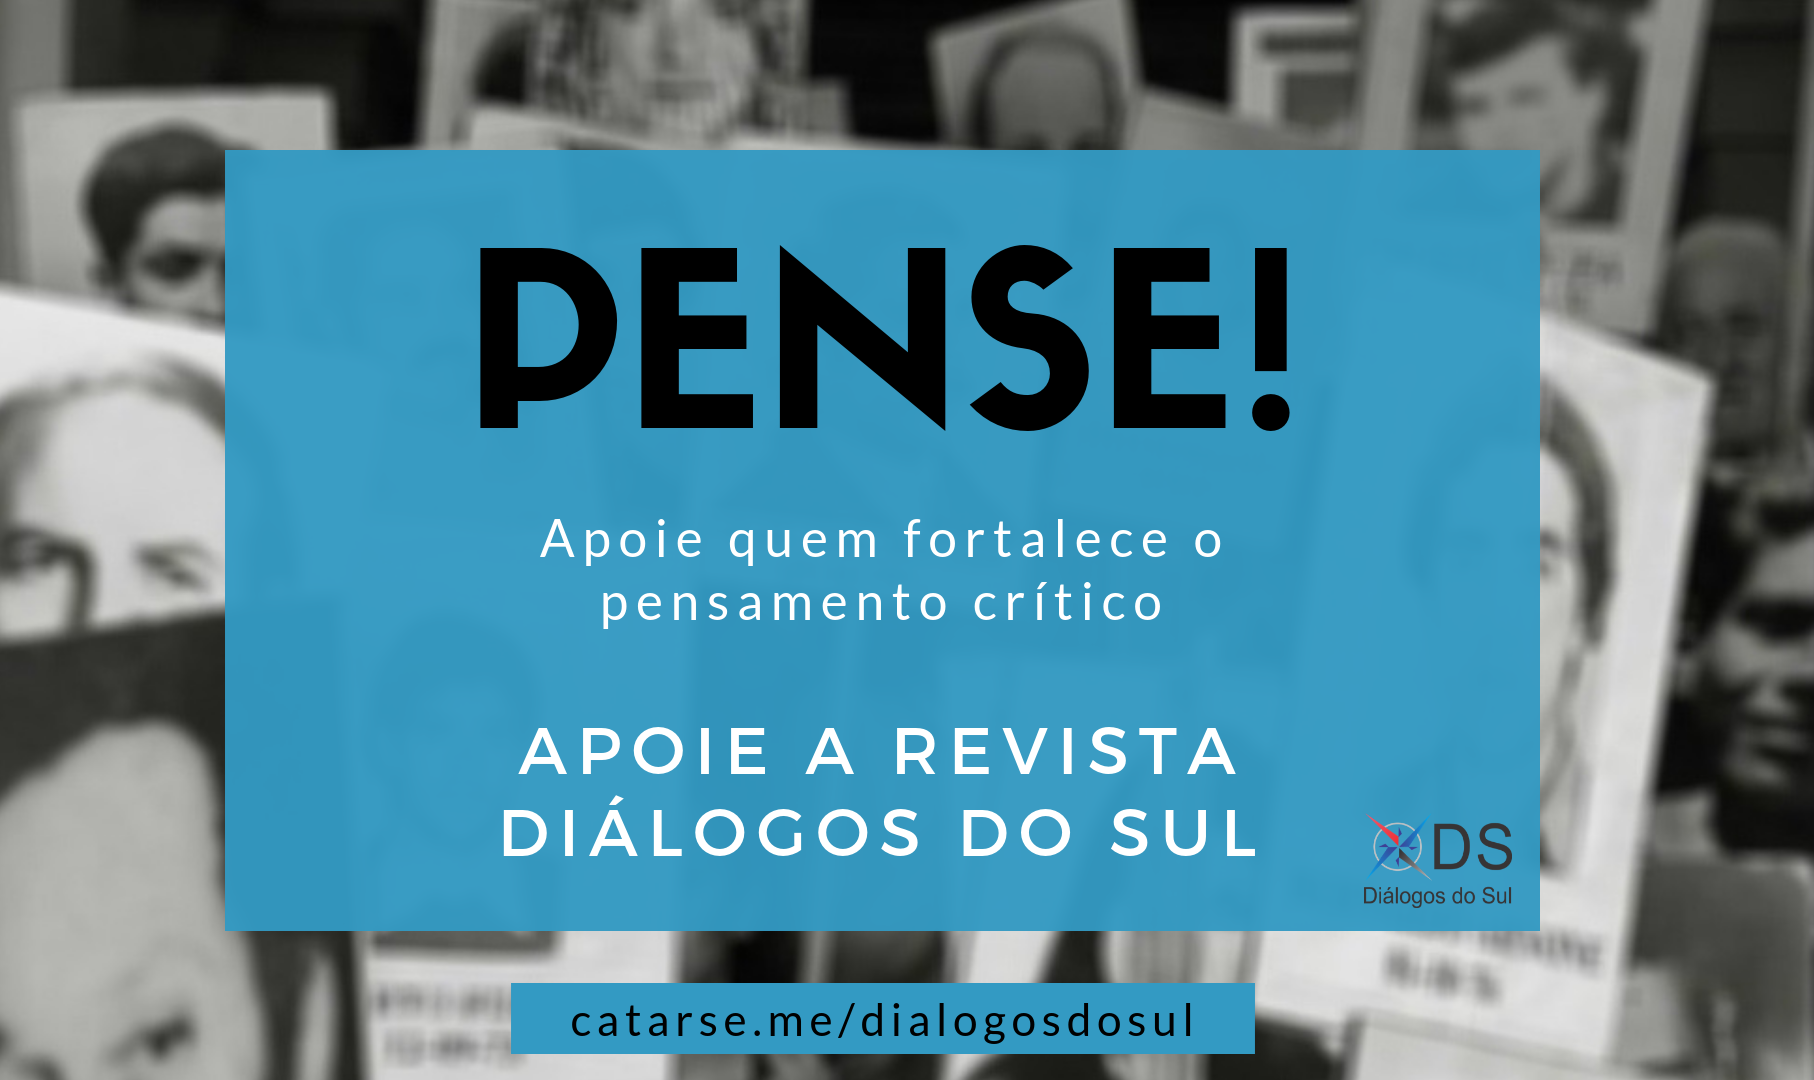 “Manter os meios alternativos é também uma forma de fortalecer a democracia”, diz Paulo Cannabrava Filho, editor e fundador da publicação